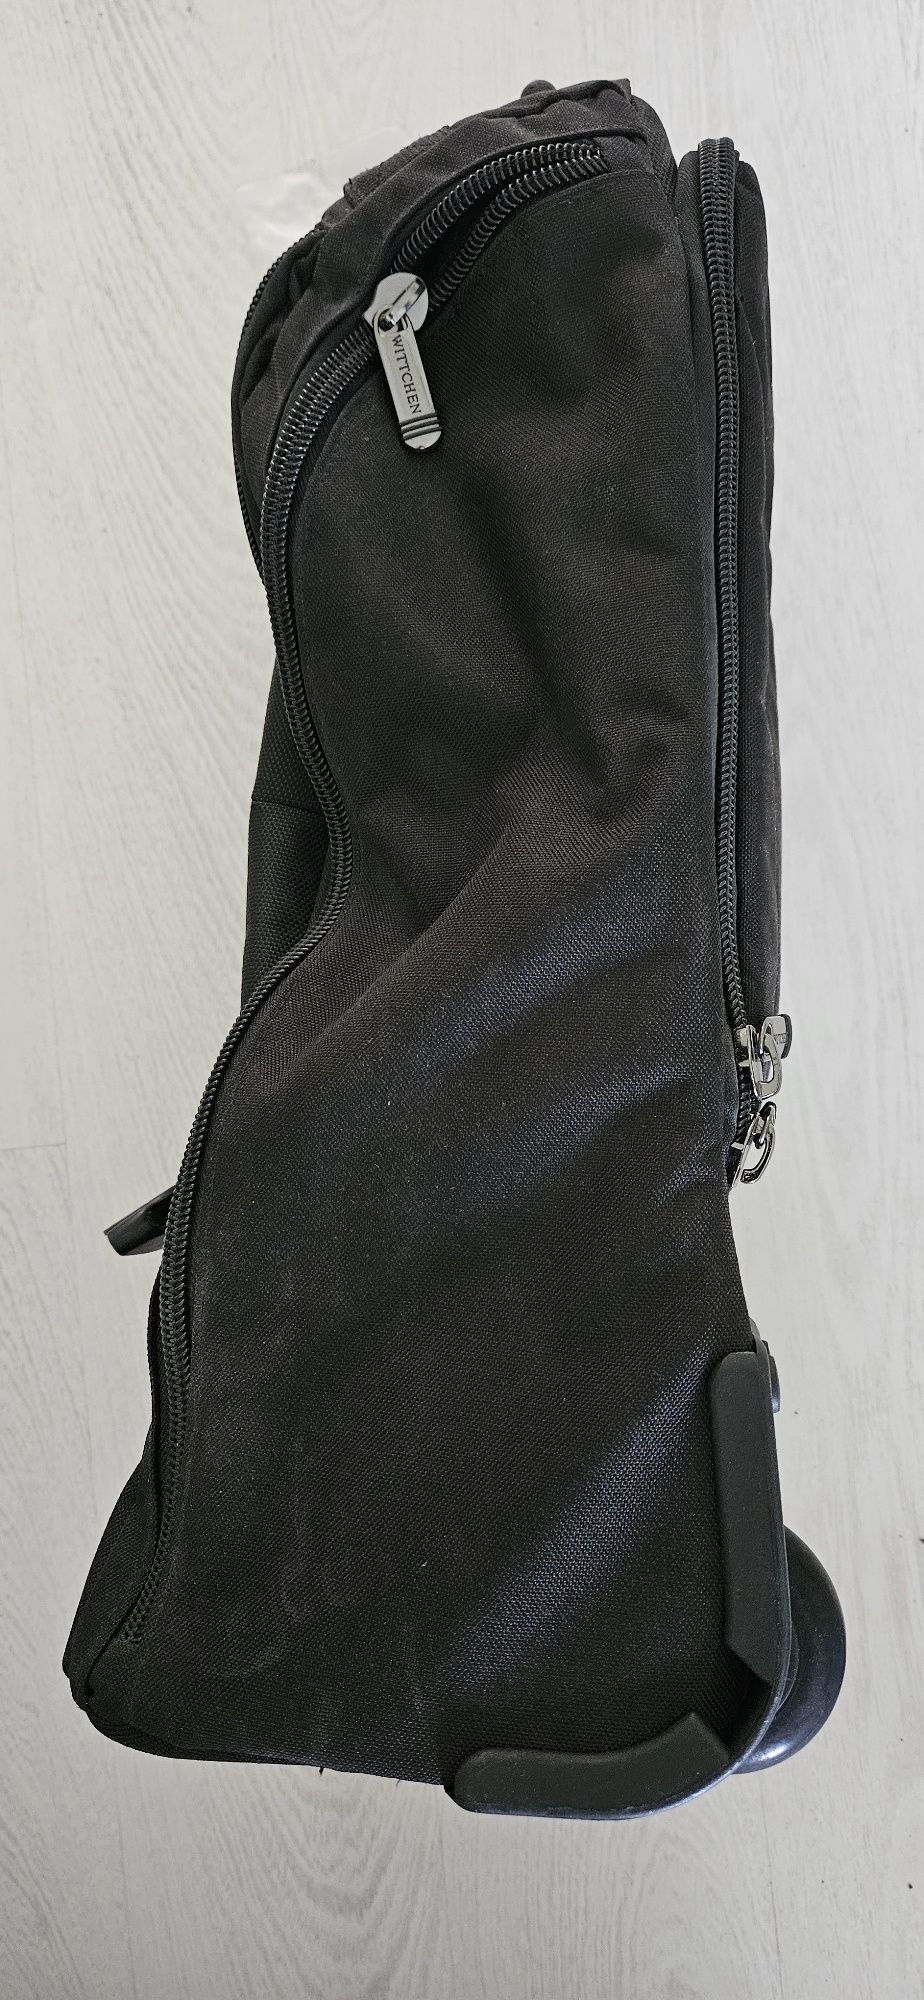 Wittchen torba podróżna na kolkach z funkcją plecaka